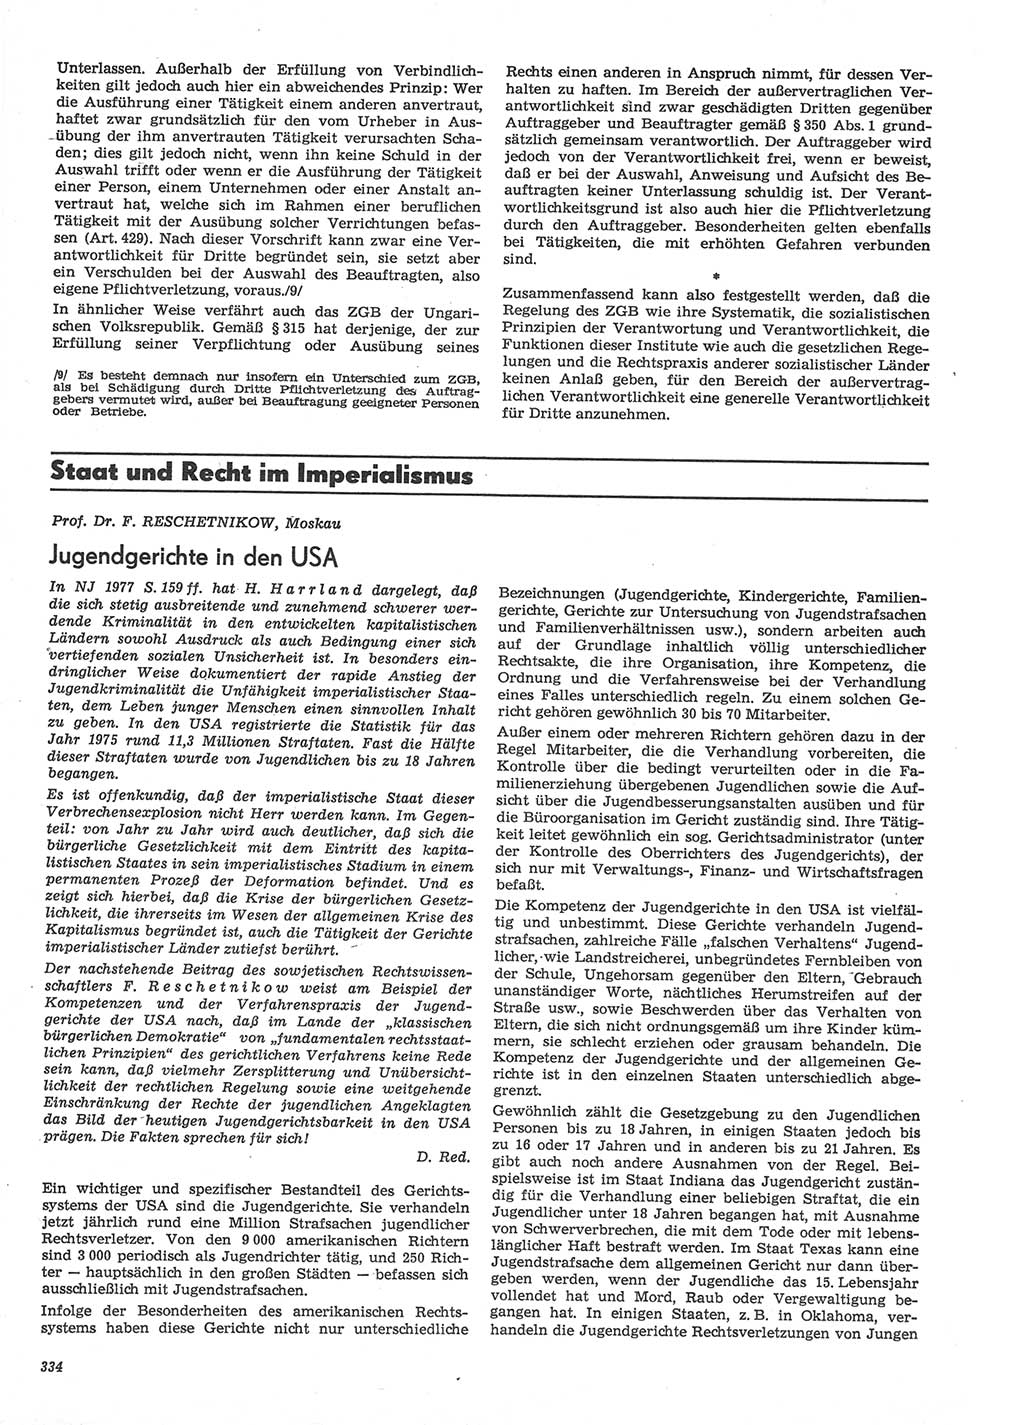 Neue Justiz (NJ), Zeitschrift für Recht und Rechtswissenschaft-Zeitschrift, sozialistisches Recht und Gesetzlichkeit, 31. Jahrgang 1977, Seite 334 (NJ DDR 1977, S. 334)